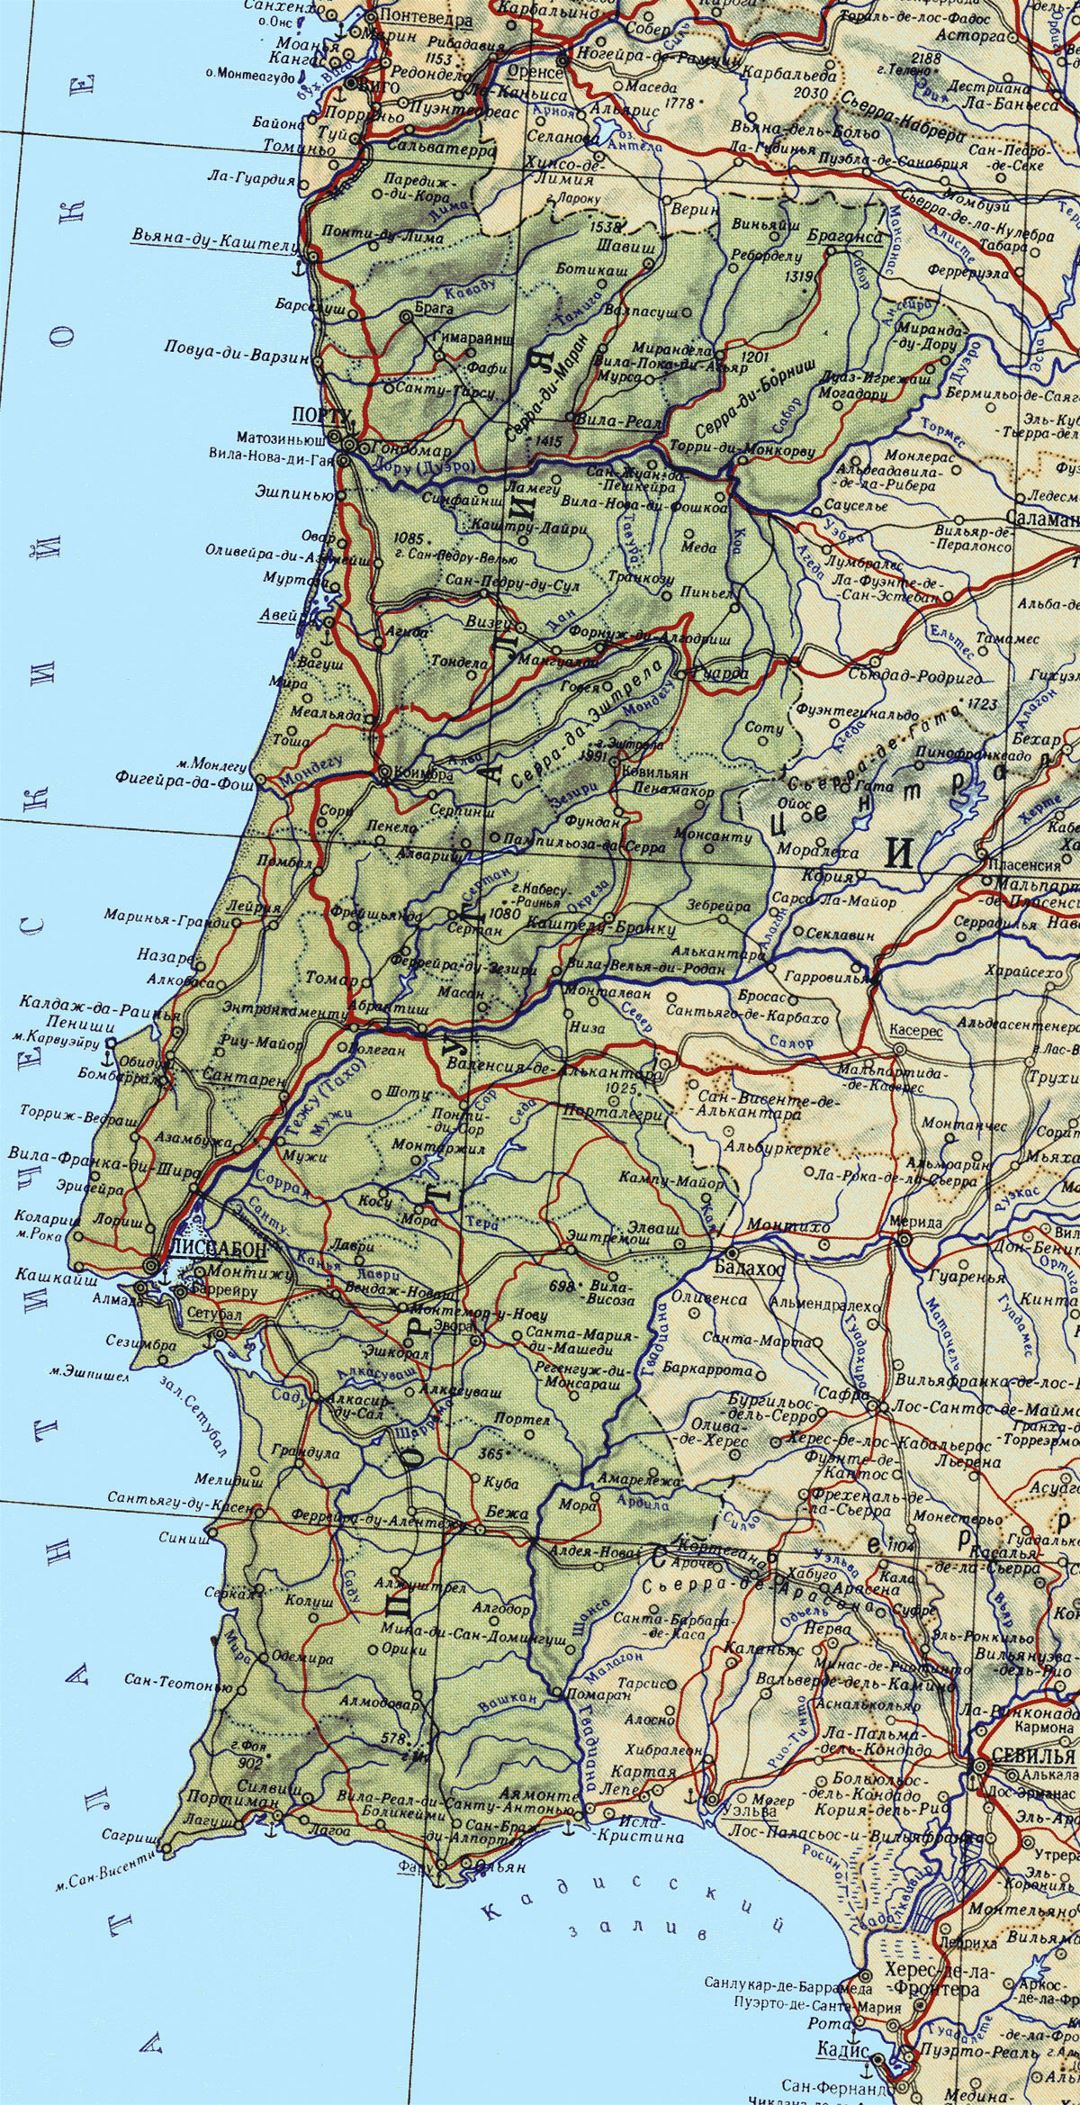 Grande detallado mapa de Portugal con carreteras, principales ciudades y puertos marítimos en ruso